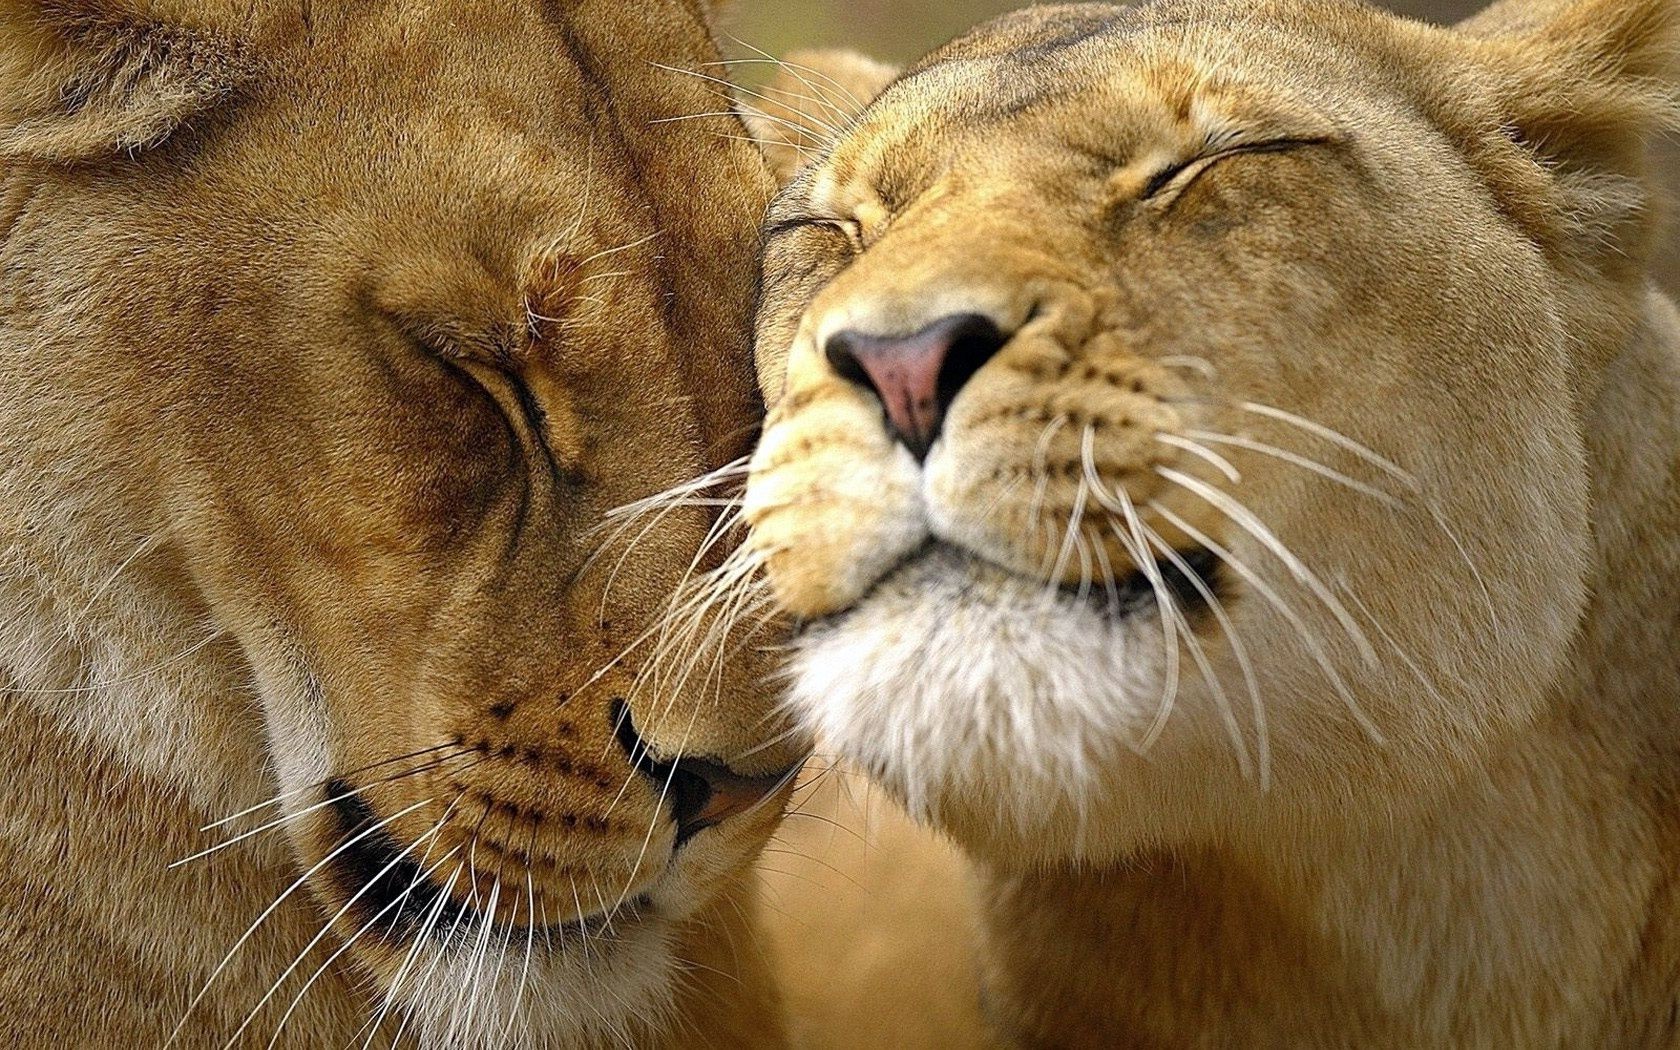 львы кошка лев дикой природы млекопитающее хищник сафари зоопарк животное мясоед большой охотник львица дикий портрет мех глаз пантера большая кошка опасность зубы